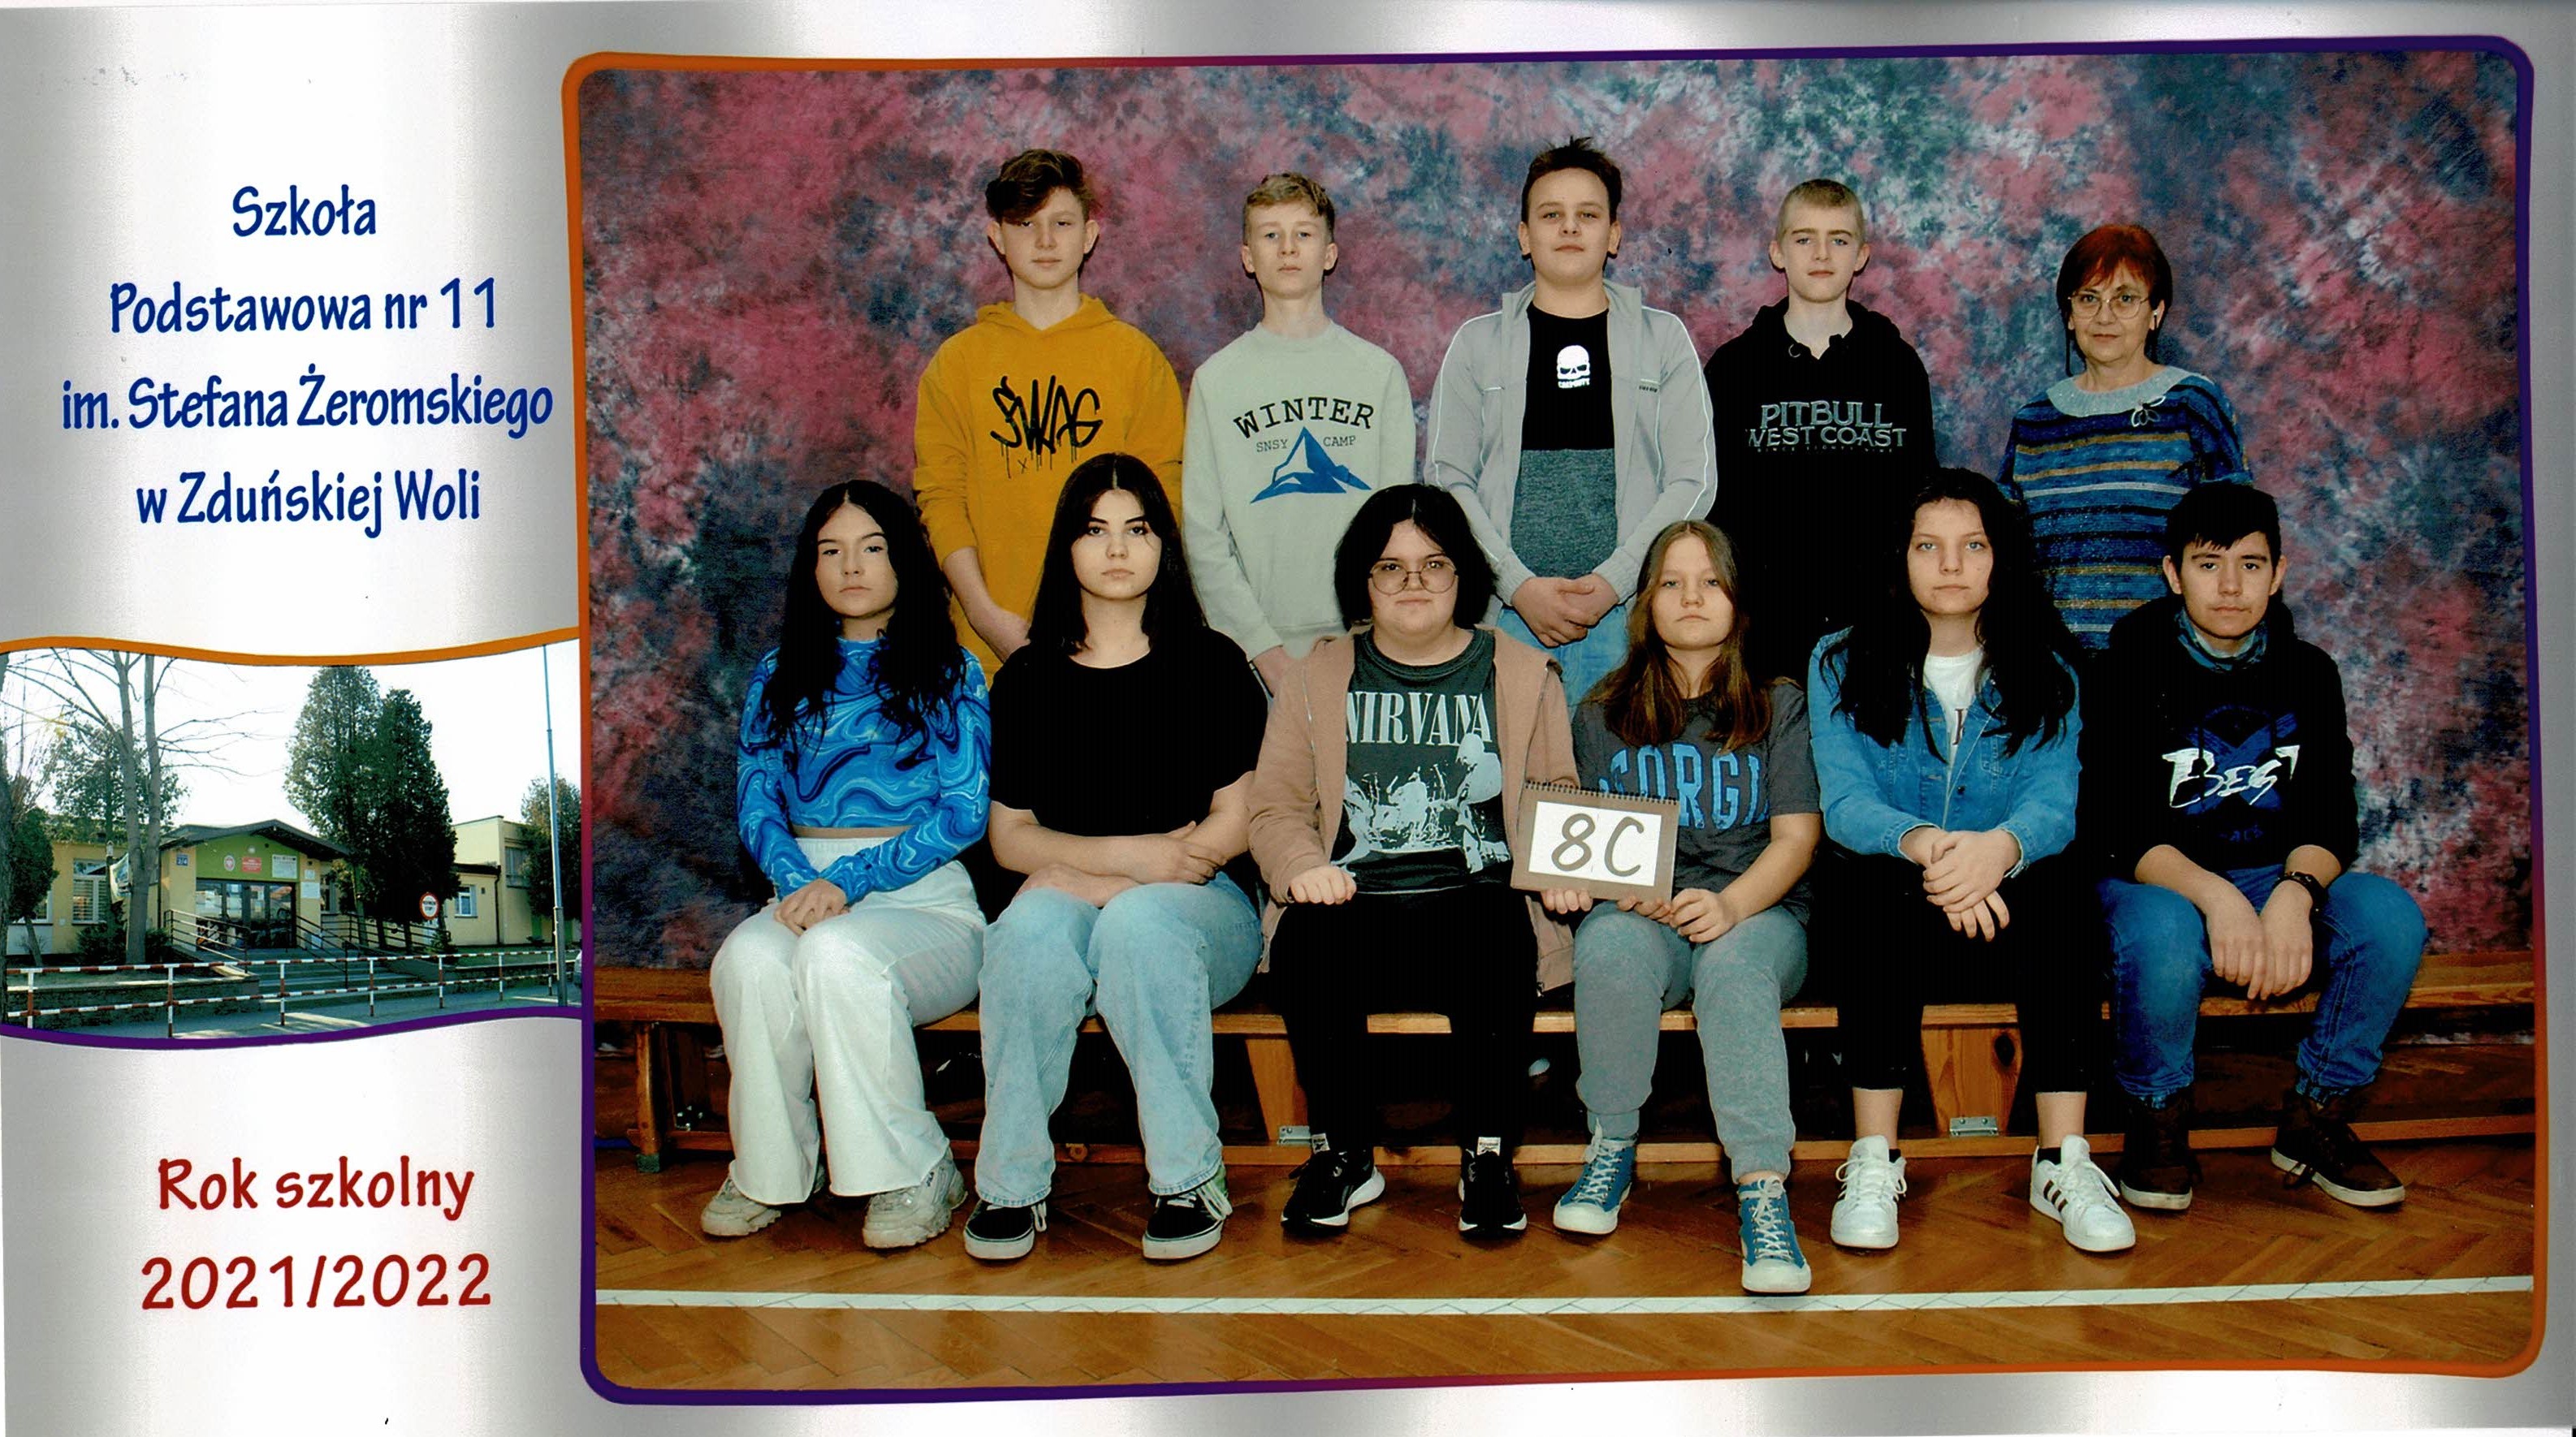 Uczniowie klasy 8c, dziewczynki i chłopcy siedzący na ławce z tabliczką "klasa 8c"